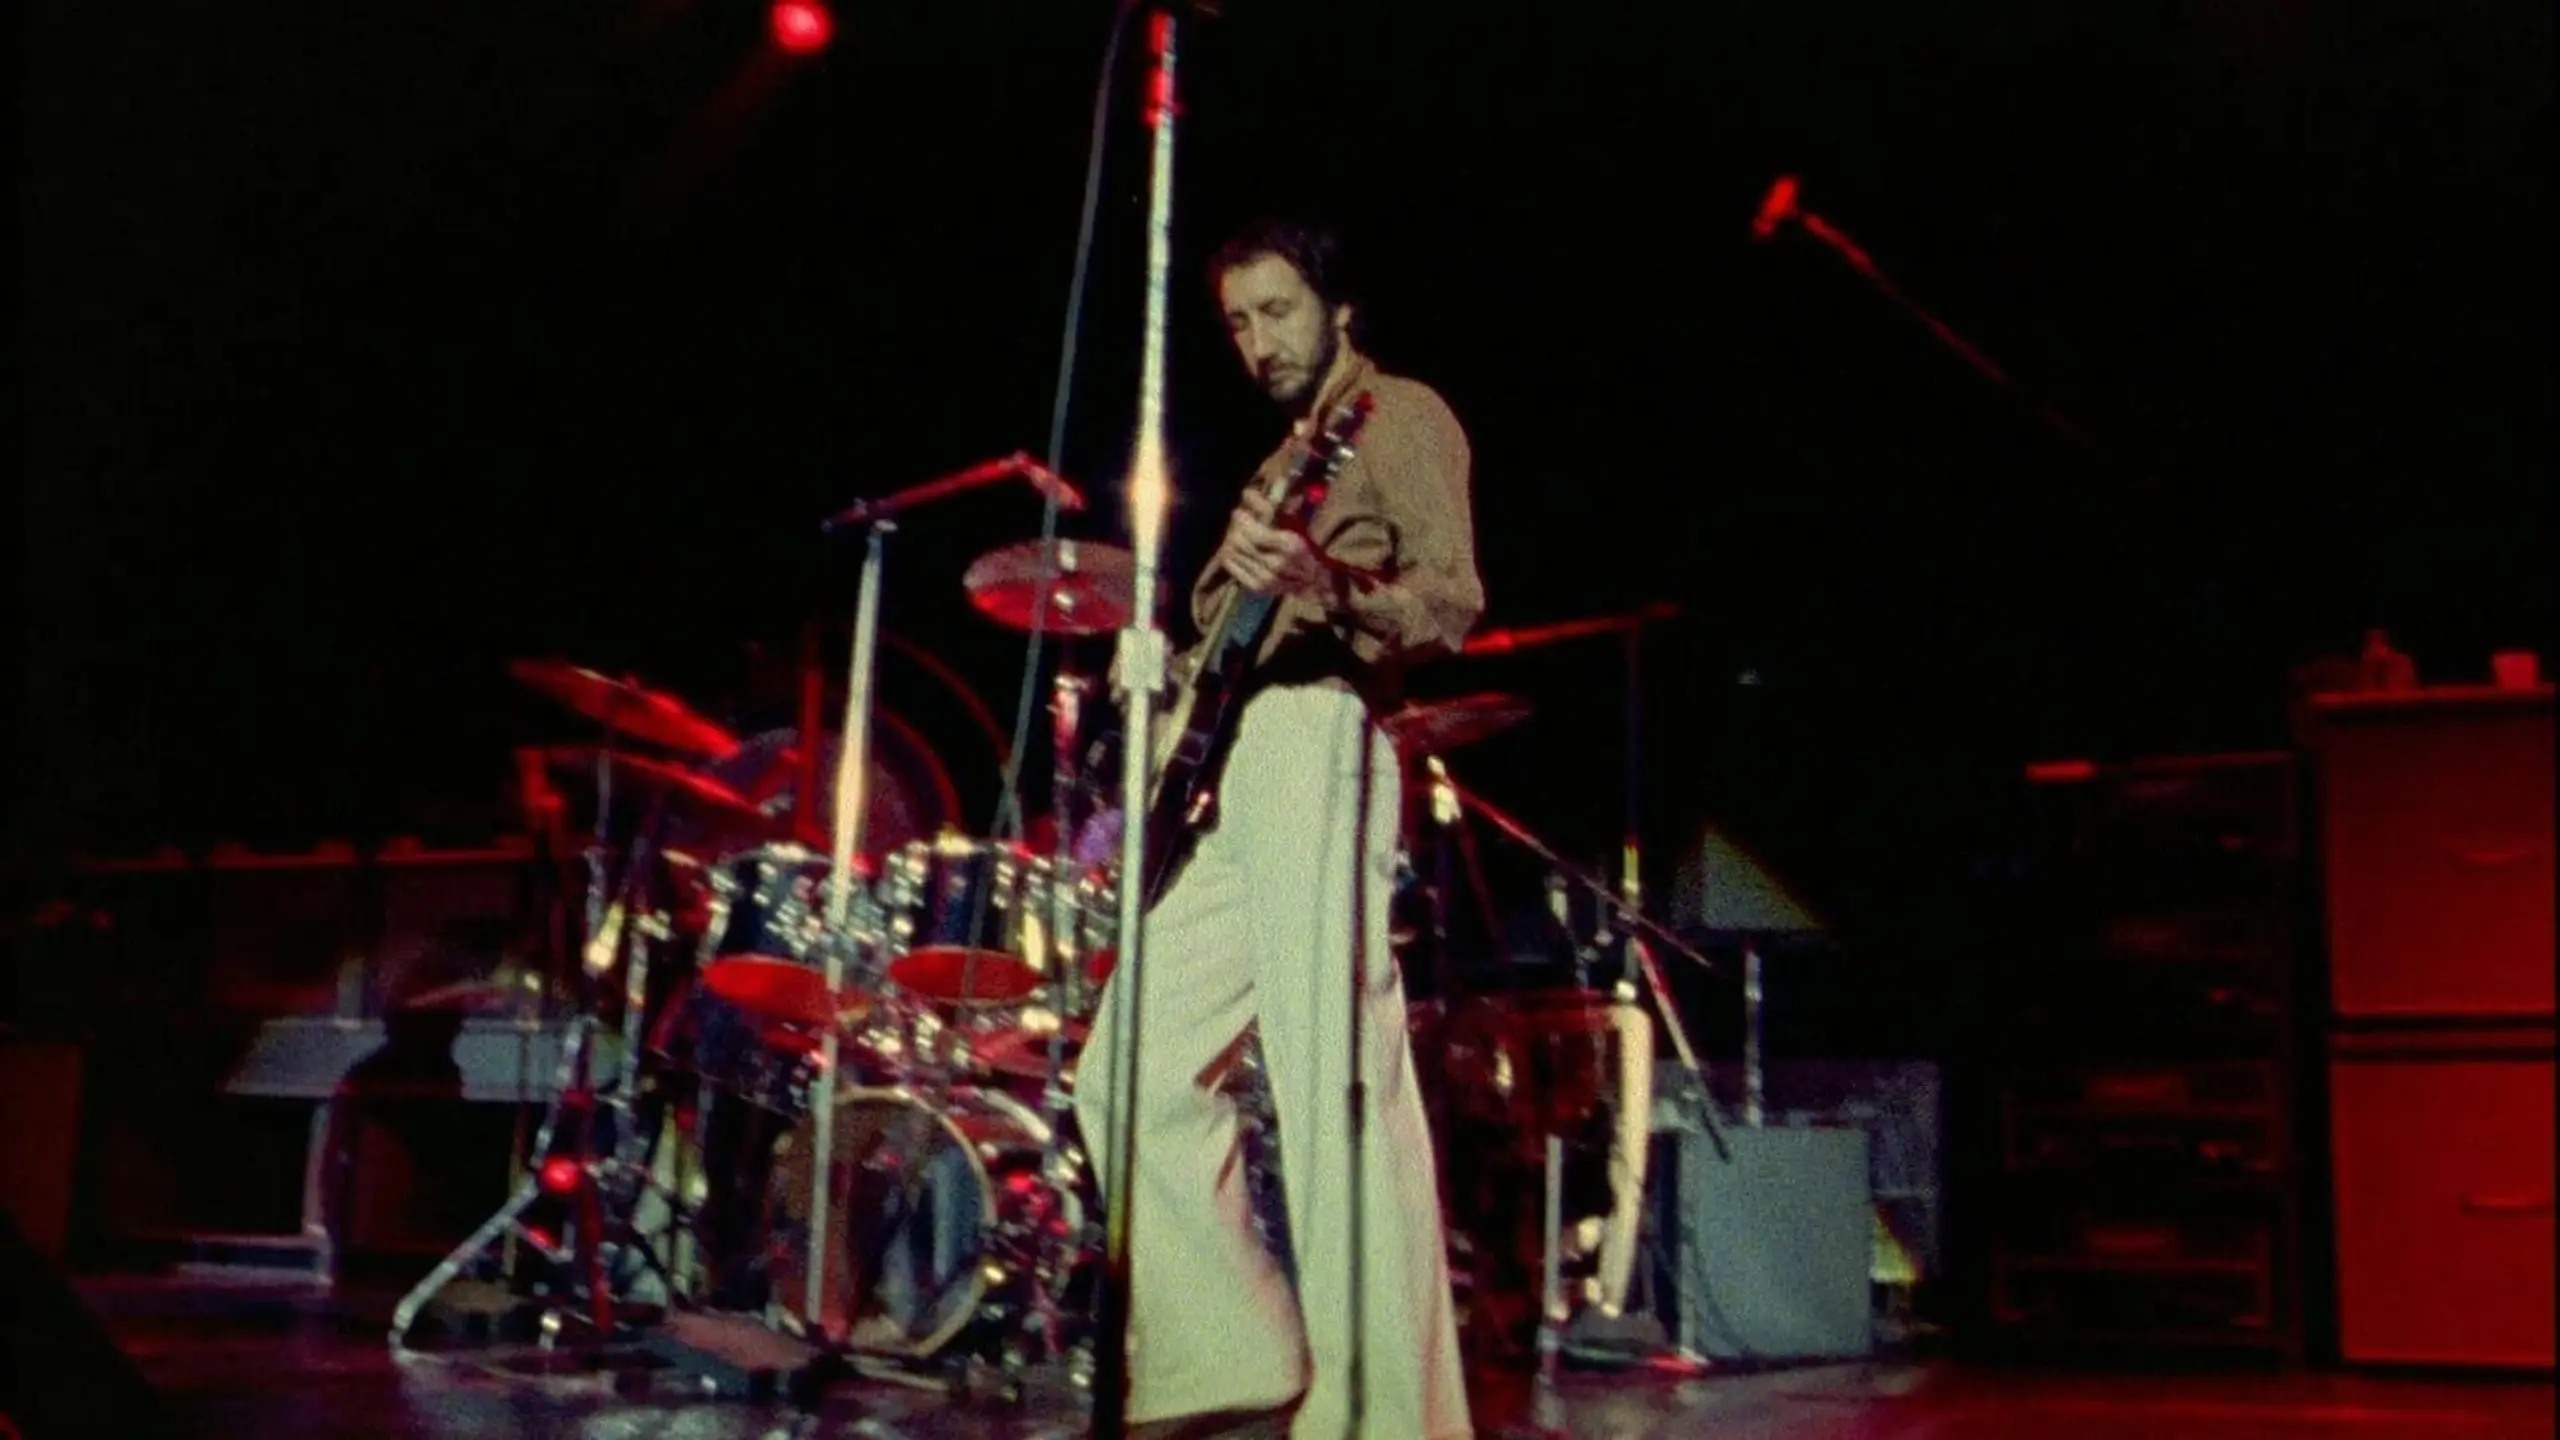 The Who: At Kilburn 1977